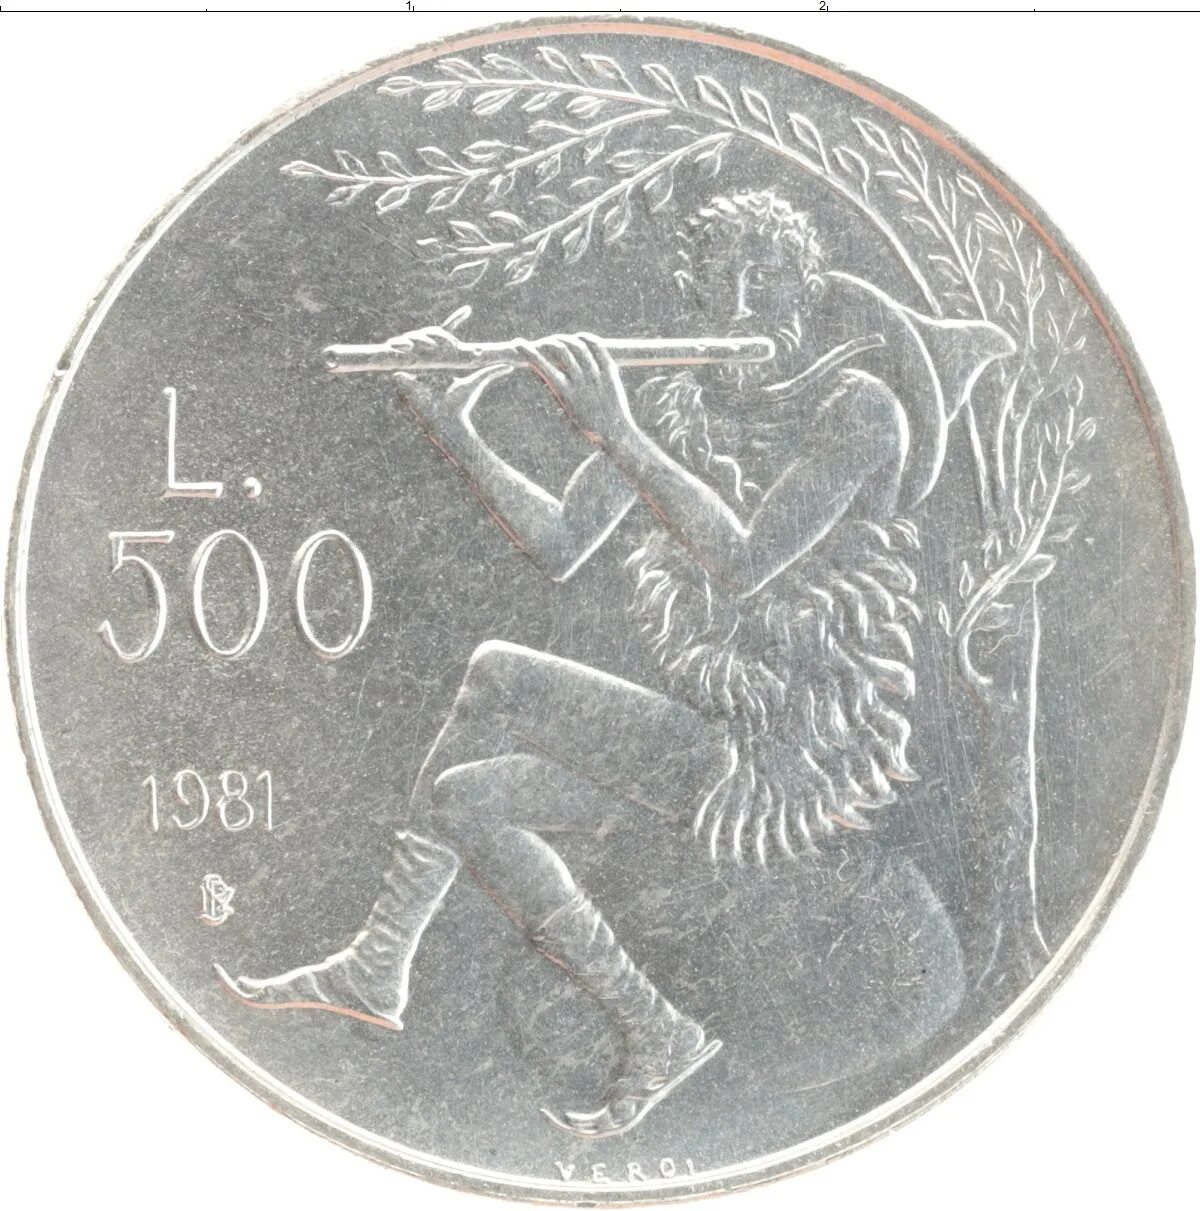 4 700 в рублях. Монета Сан-Марино 500 лир 1981. 500 Лир. Сан-Марино. Серебро.. 500 Лир Сан Марино 2000 года. SP& 500 монета.